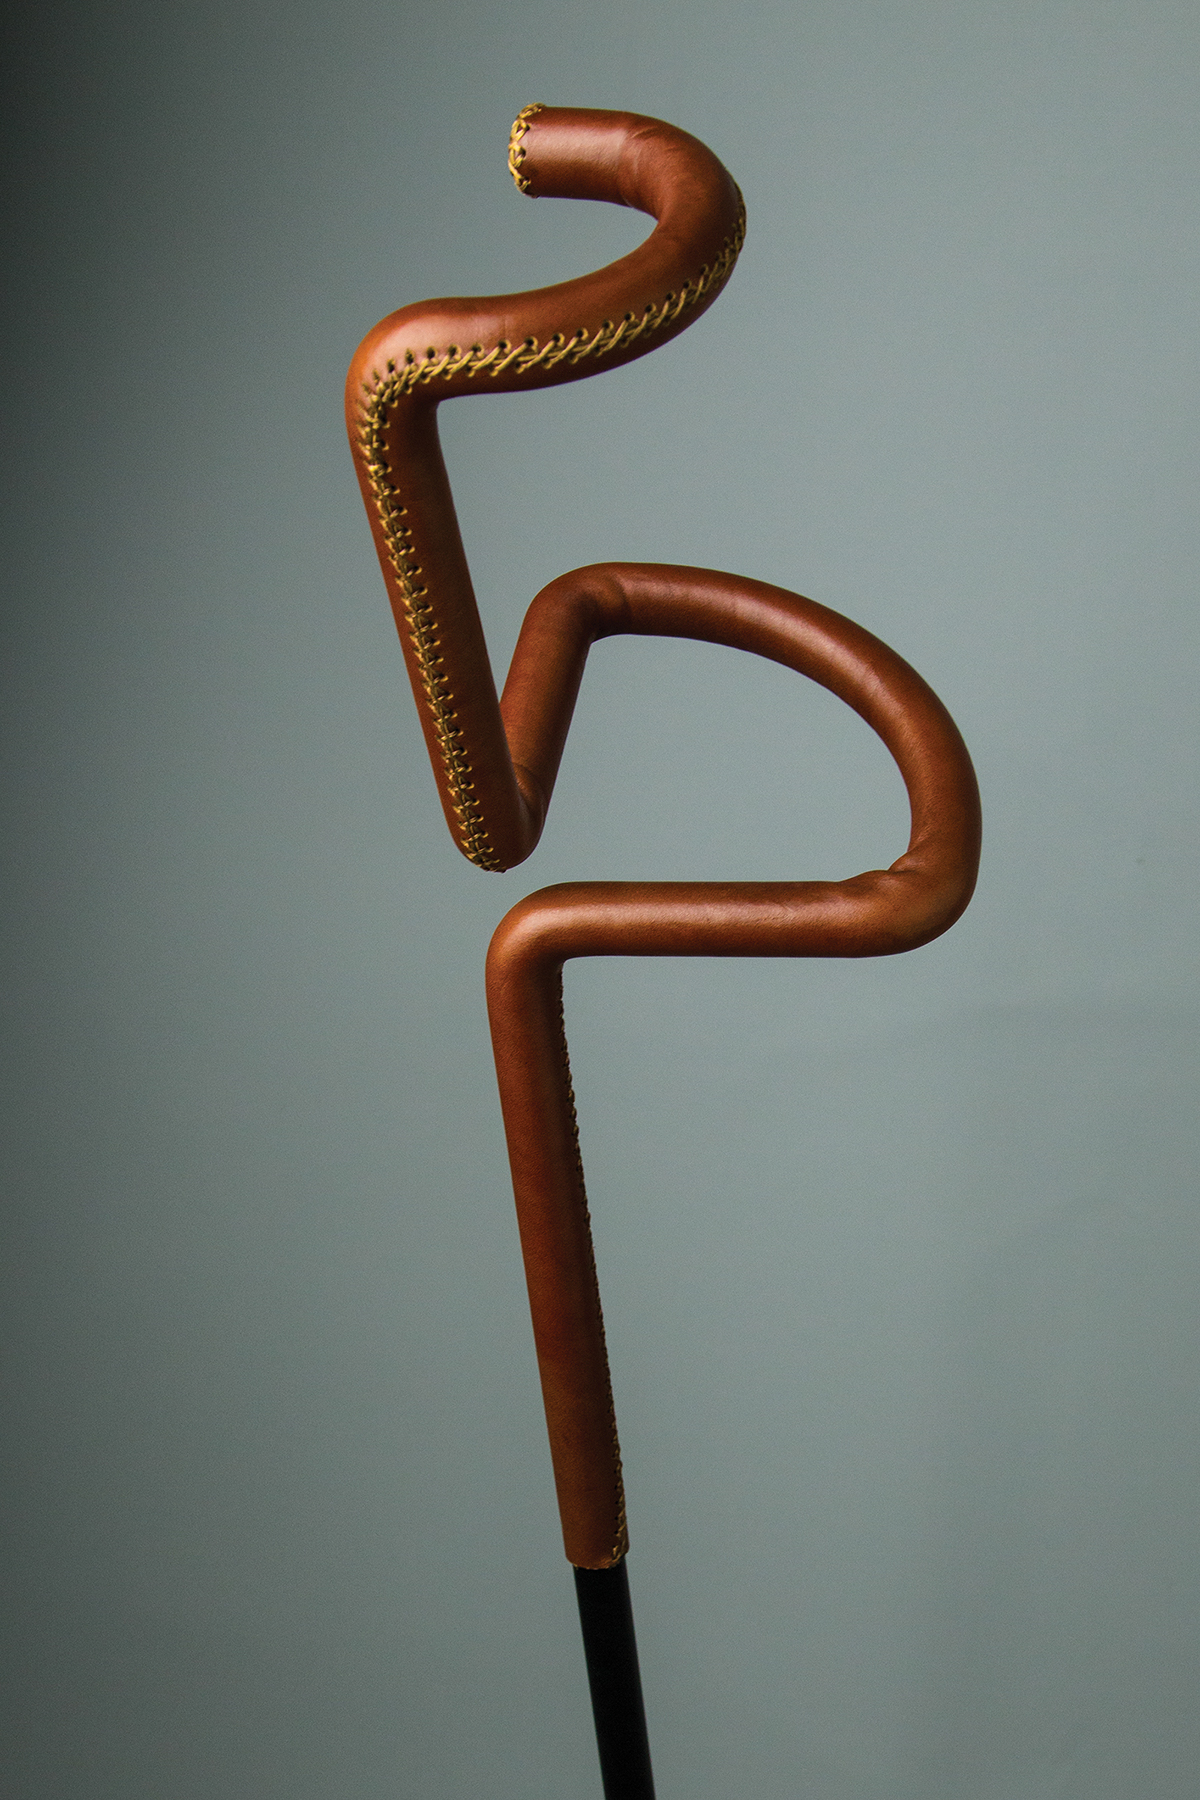 Adobe Portfolio crutch flamingo Cane disabled